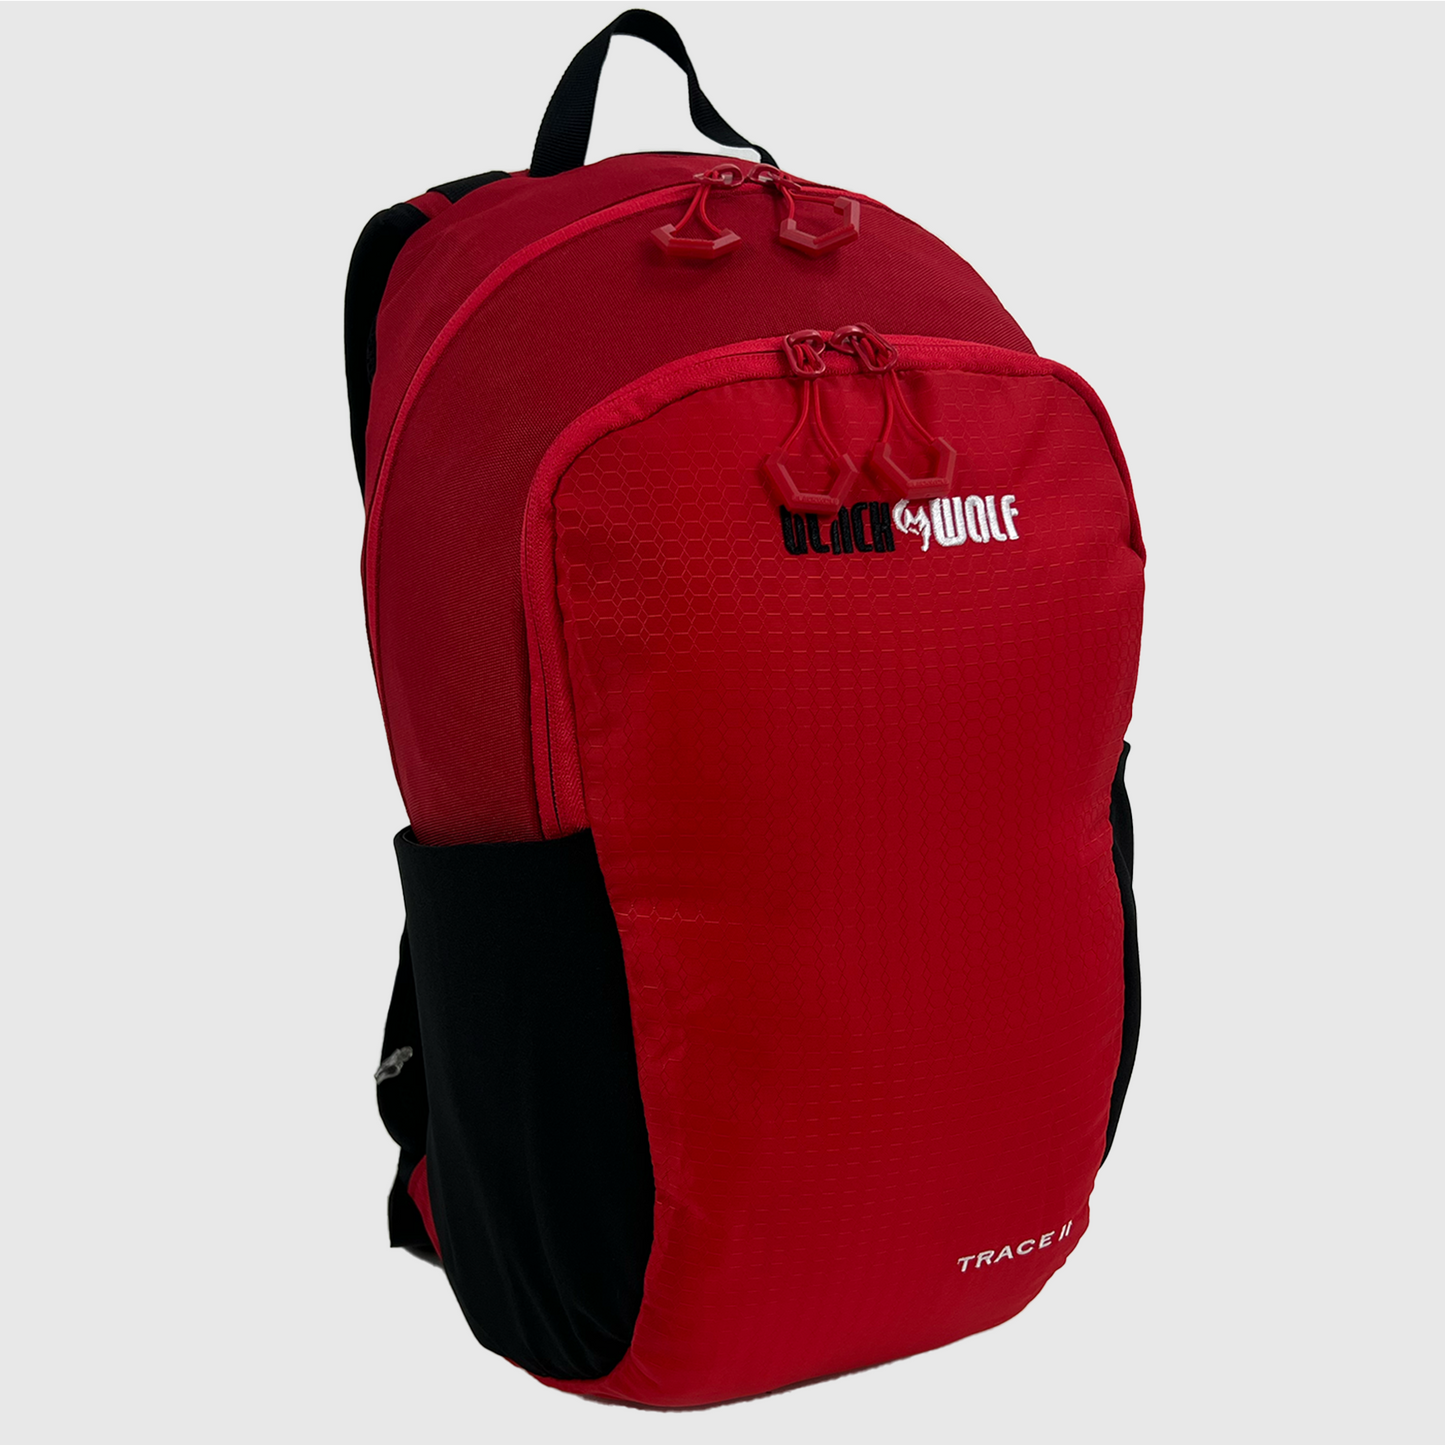 
                  
                    Trace II Backpack
                  
                